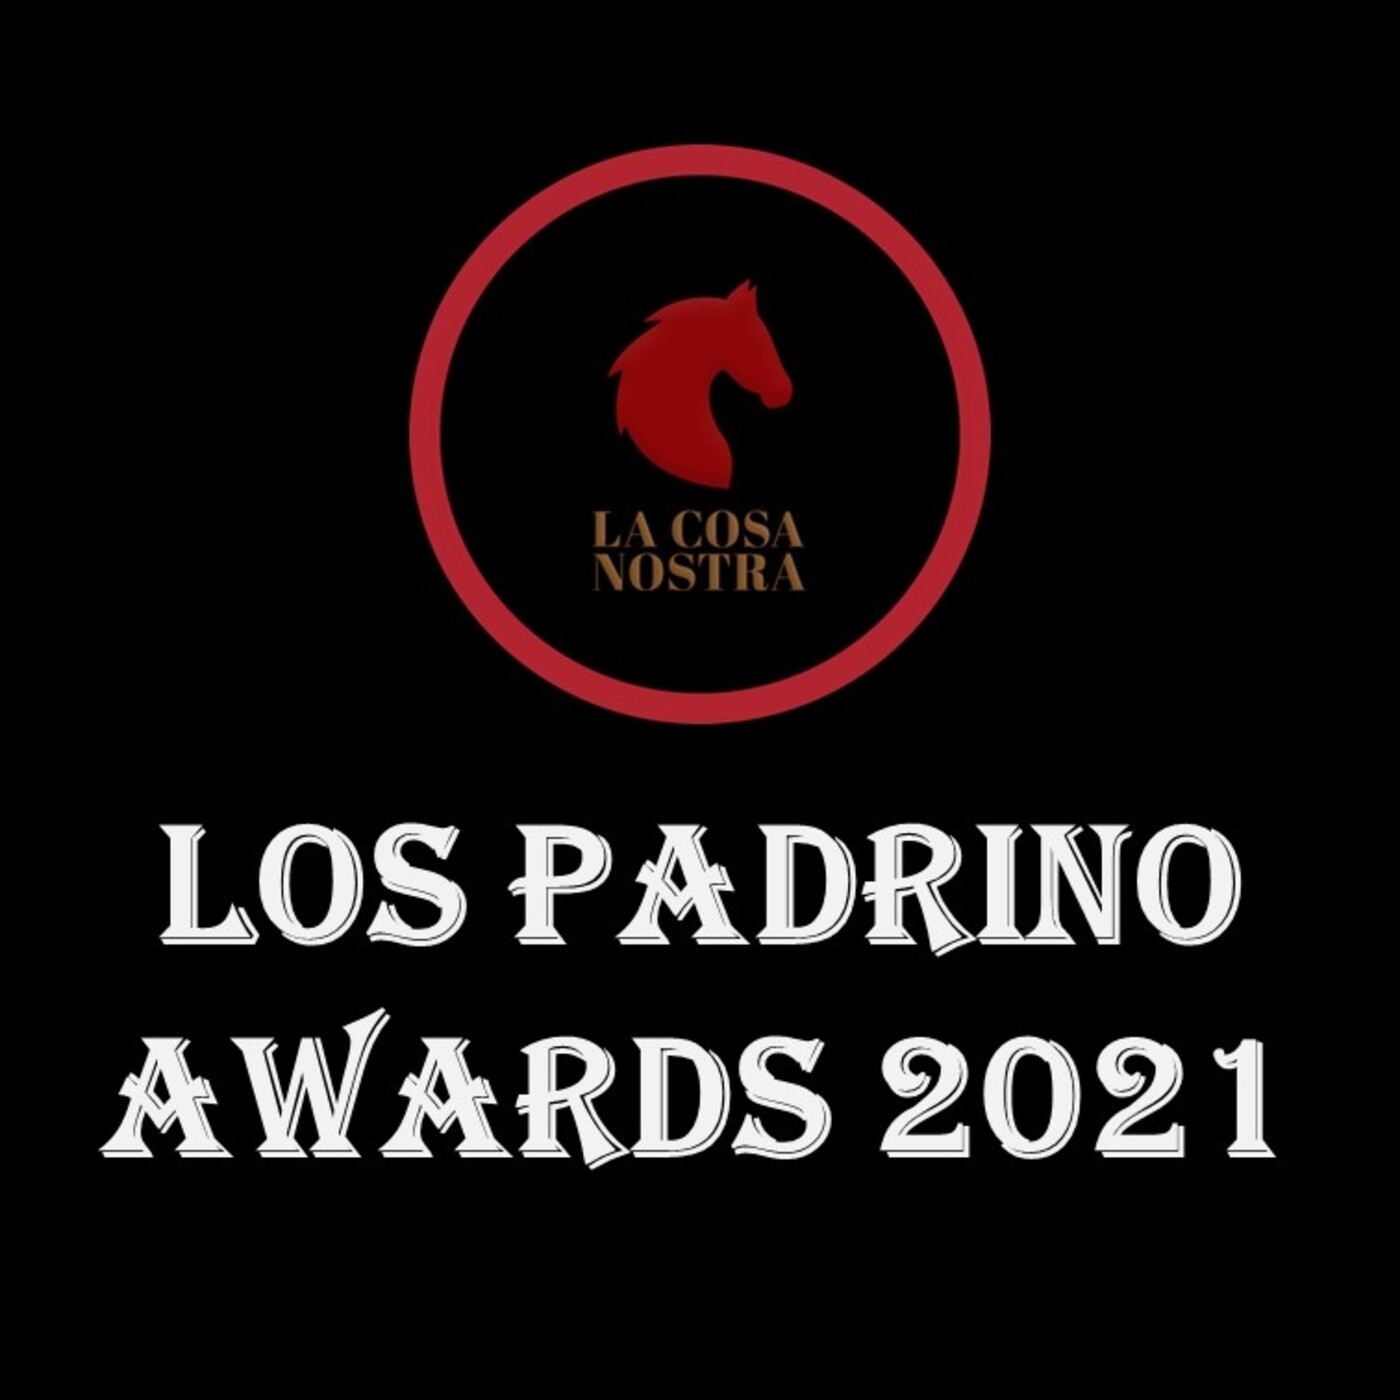 Los padrino awards 2021